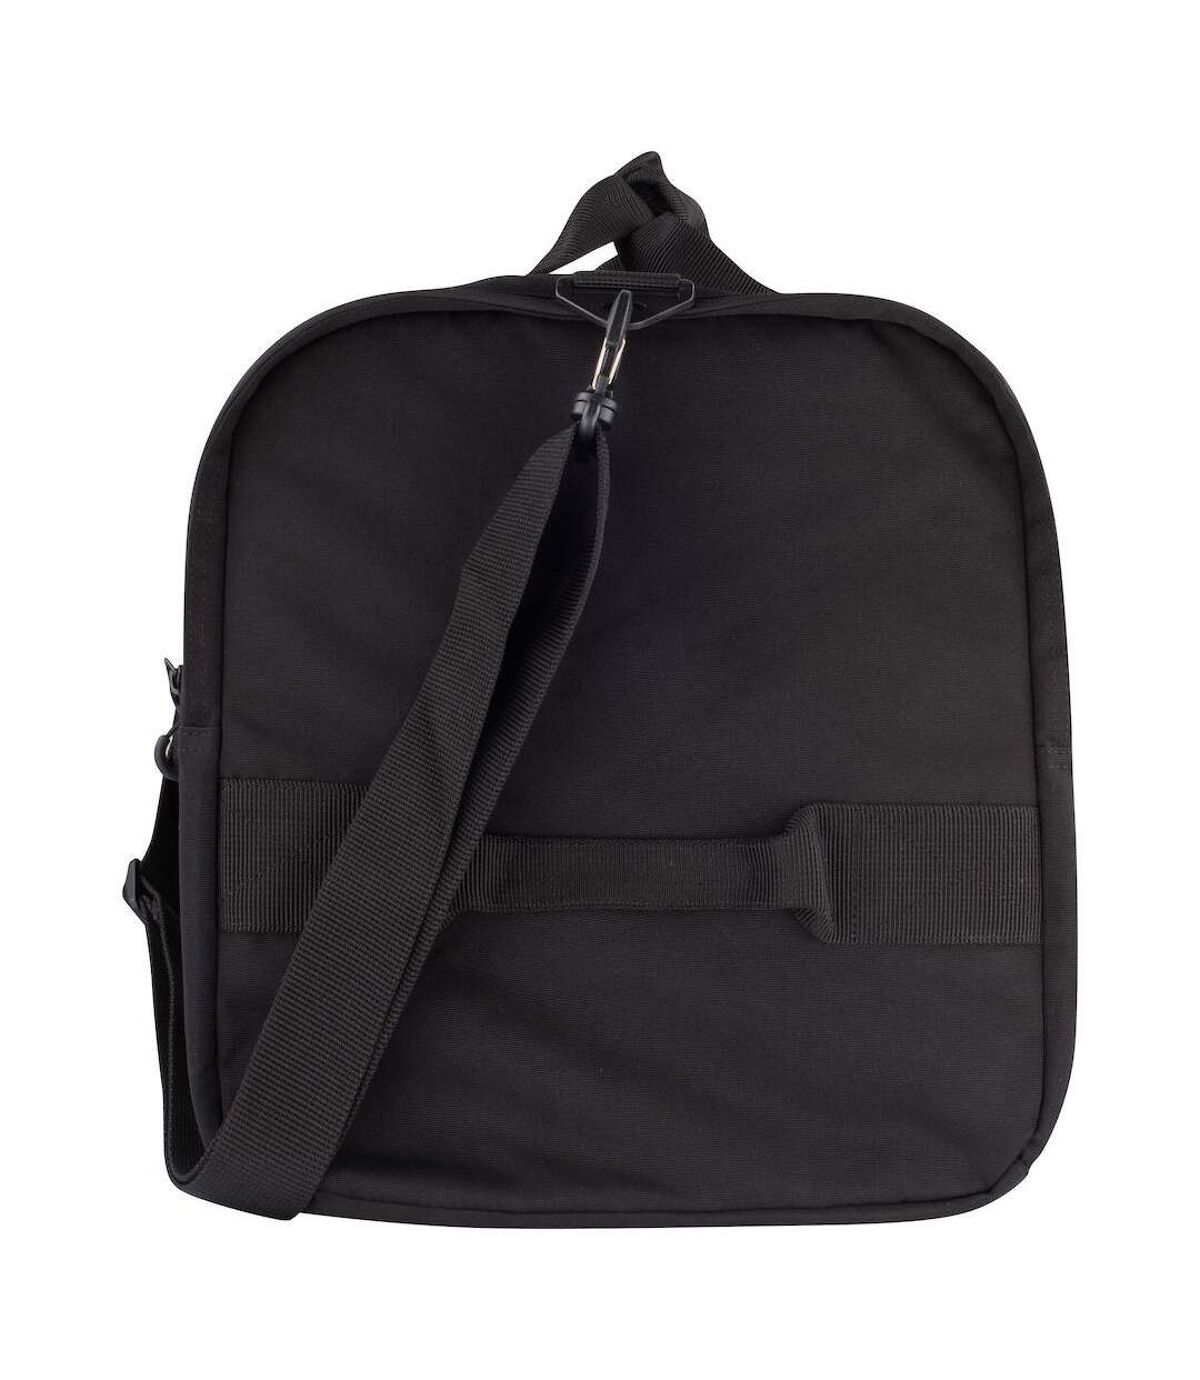 Clique 2.0 Travel Bag (Black) (51.03pint)